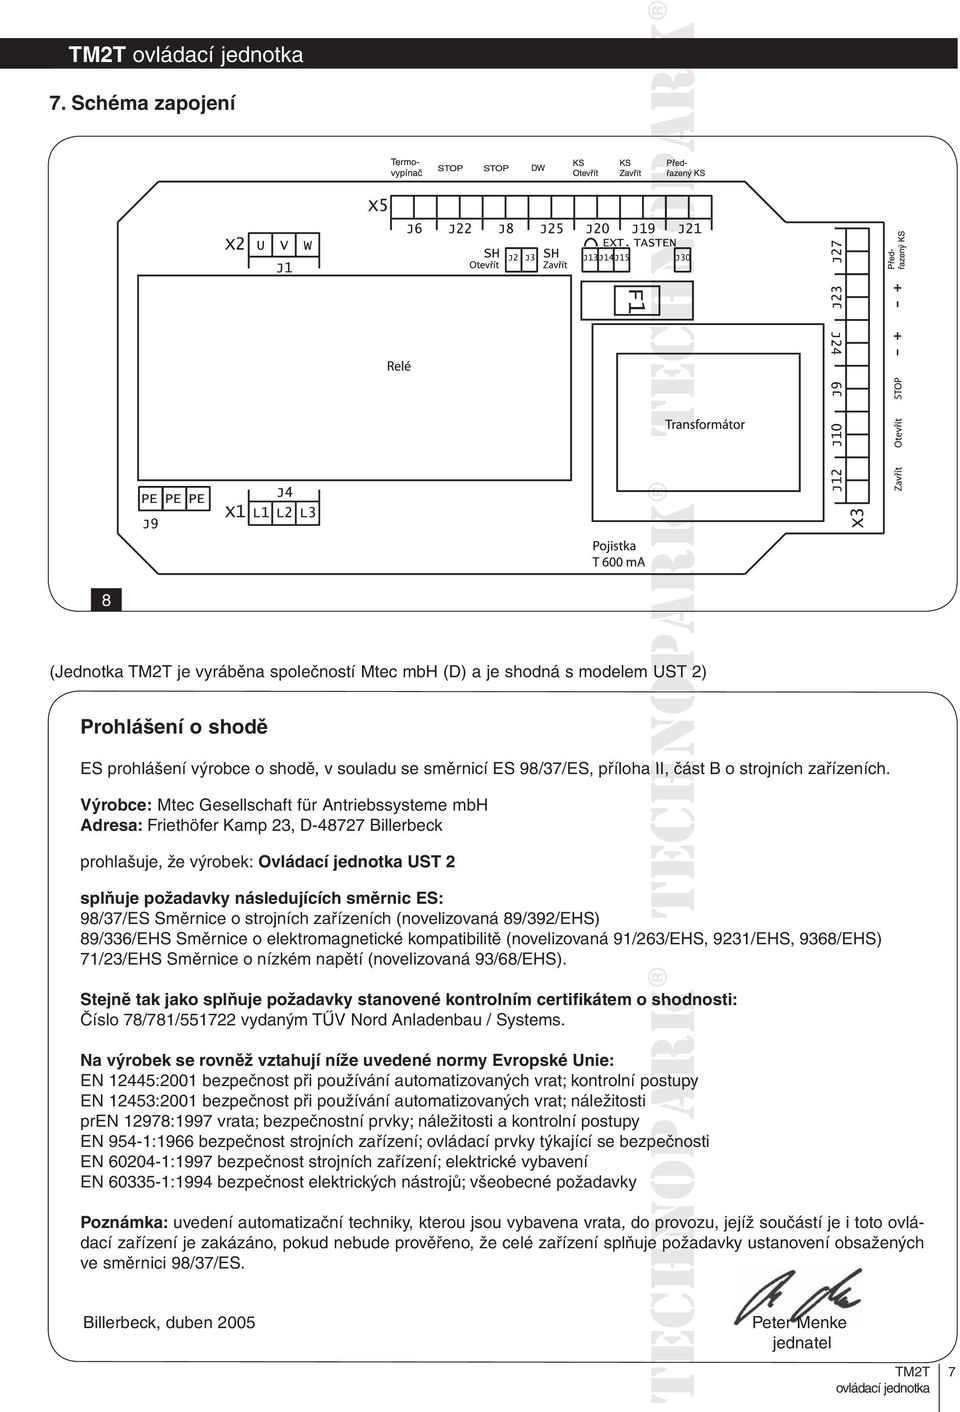 Výrobce: Mtec Gesellschaft für Antriebssysteme mbh Adresa: Friethöfer Kamp 23, D-48727 Billerbeck prohlašuje, že výrobek: Ovládací jednotka UST 2 splňuje požadavky následujících směrnic ES: 98/37/ES